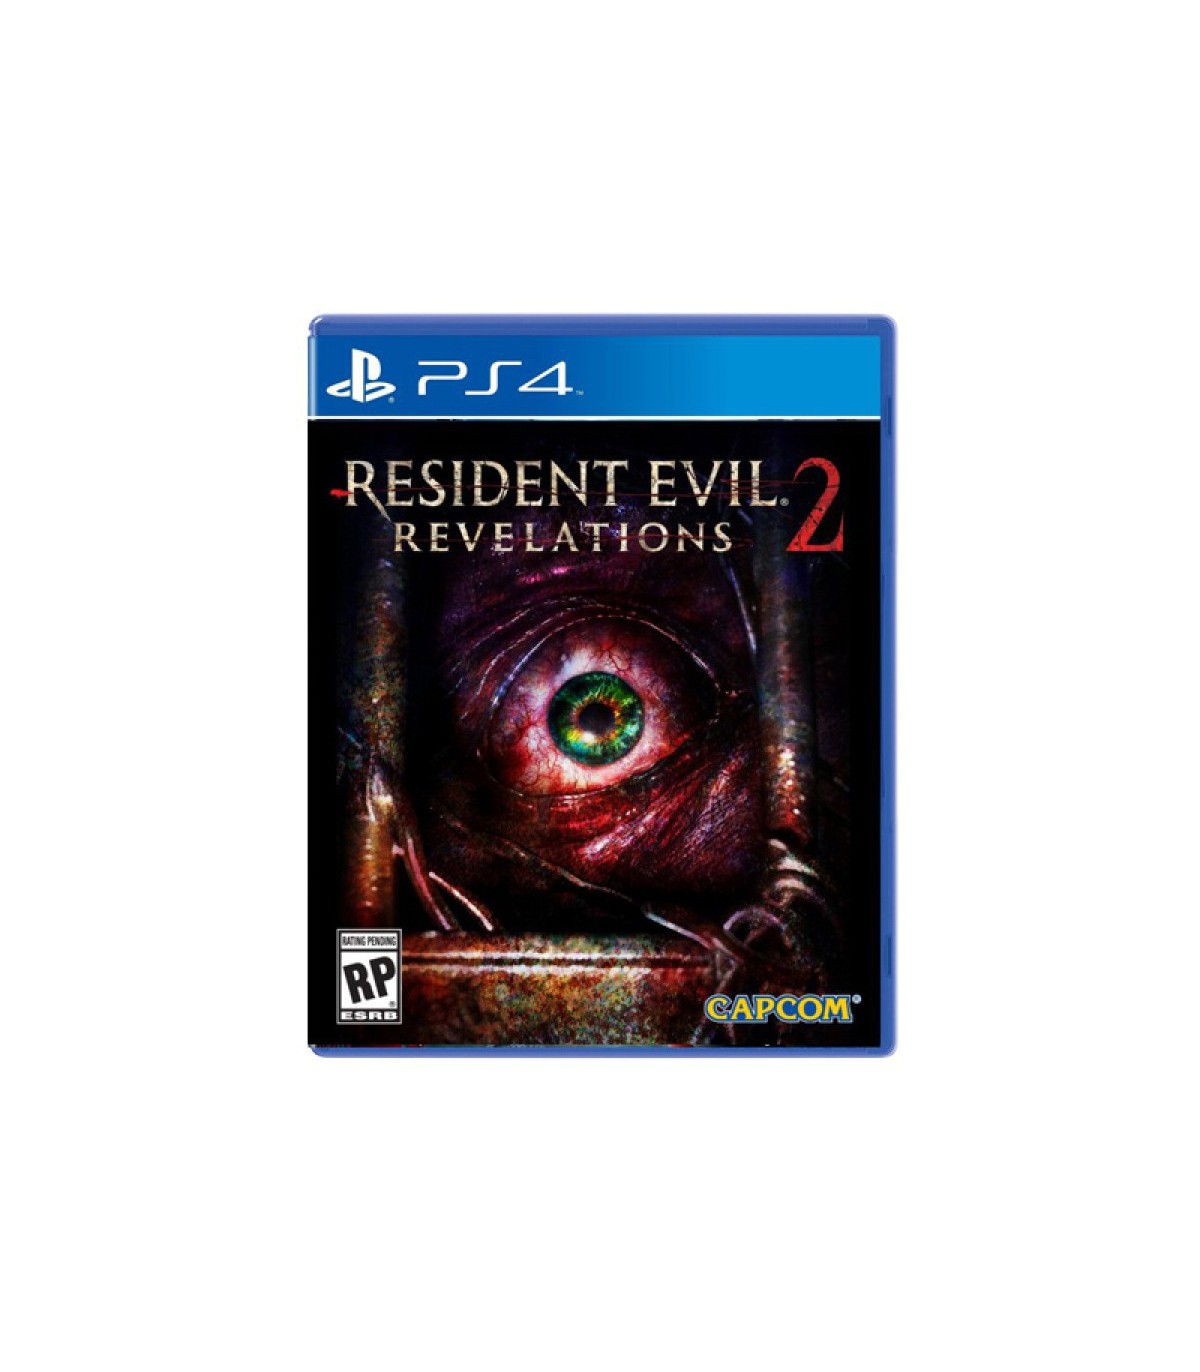 بازی Resident Evil Revelations 2 کارکرده - پلی استیشن 4